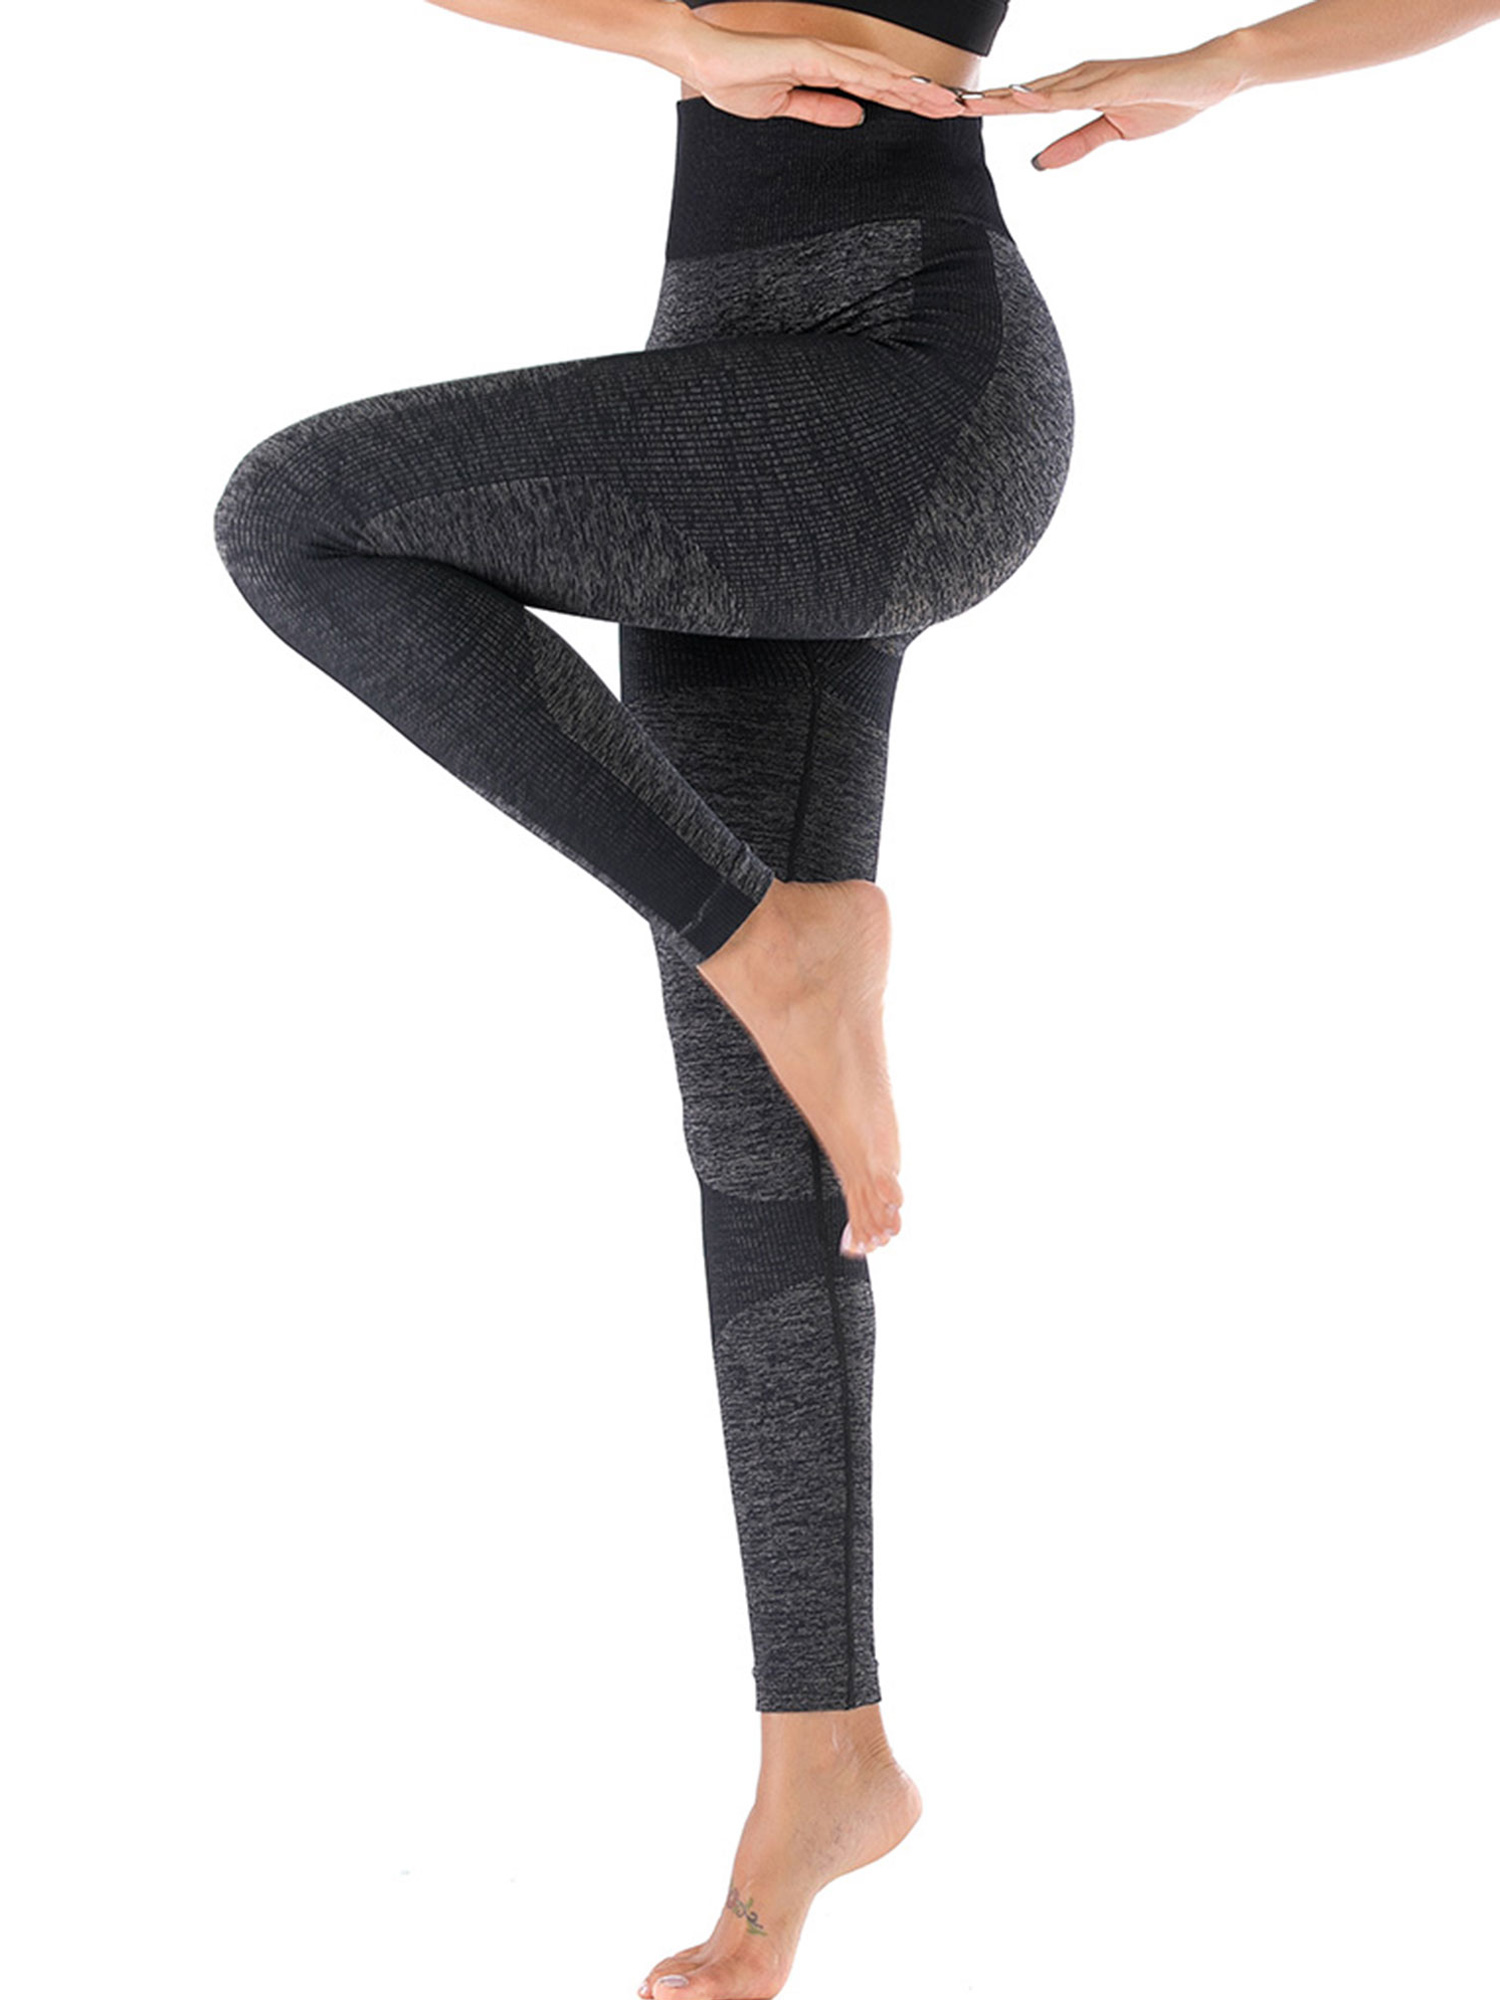 spandex yoga leggings